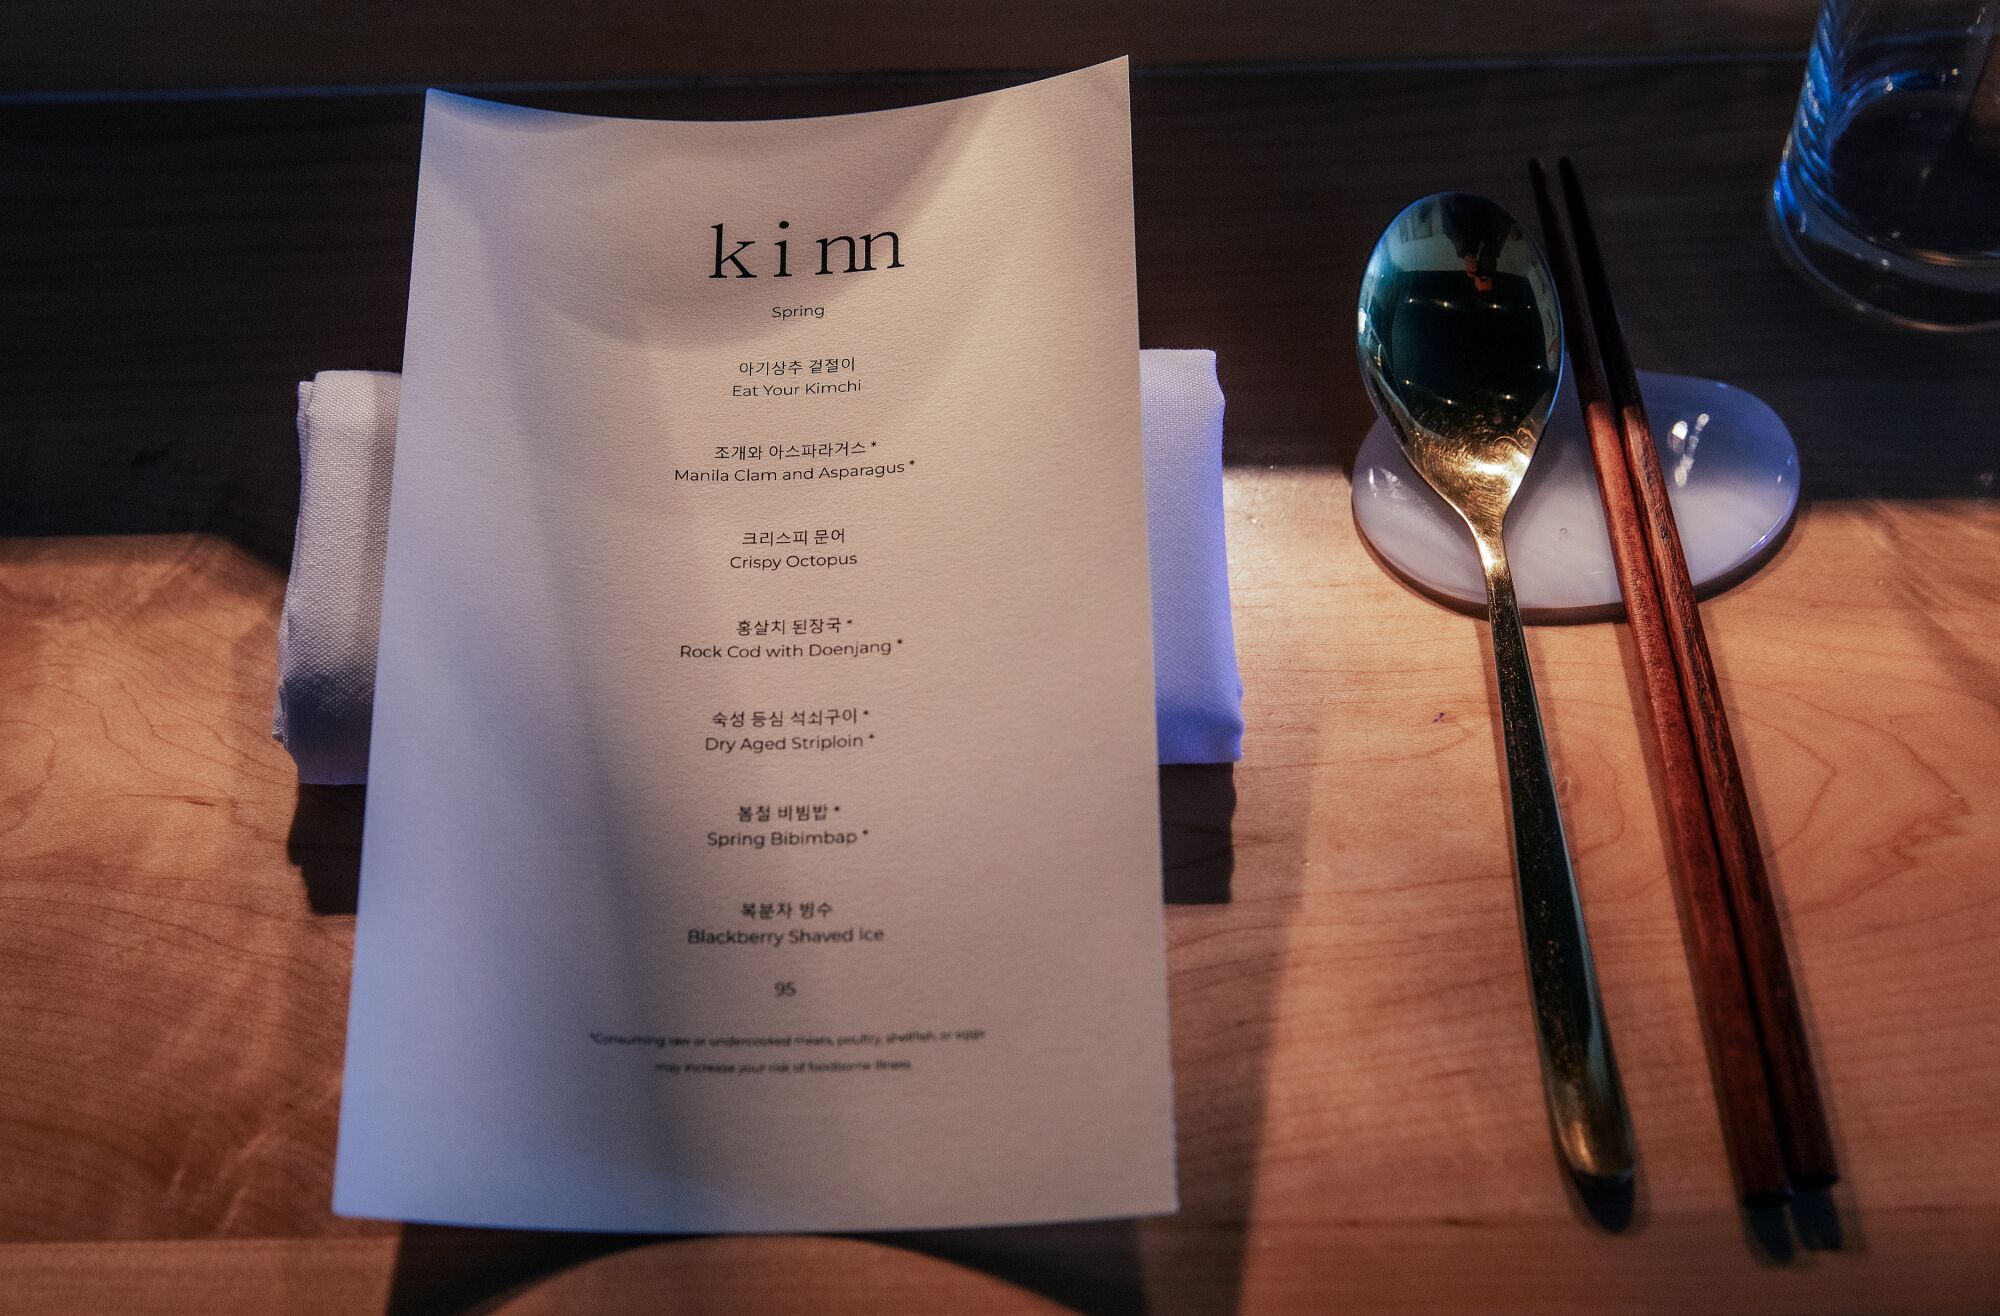 Im Kinn, einem kleinen Restaurant mit Degustationsmenü in der 6th St. in Koreatown, werden ein gedeckter Tisch und ein Menü auf der Theke platziert.